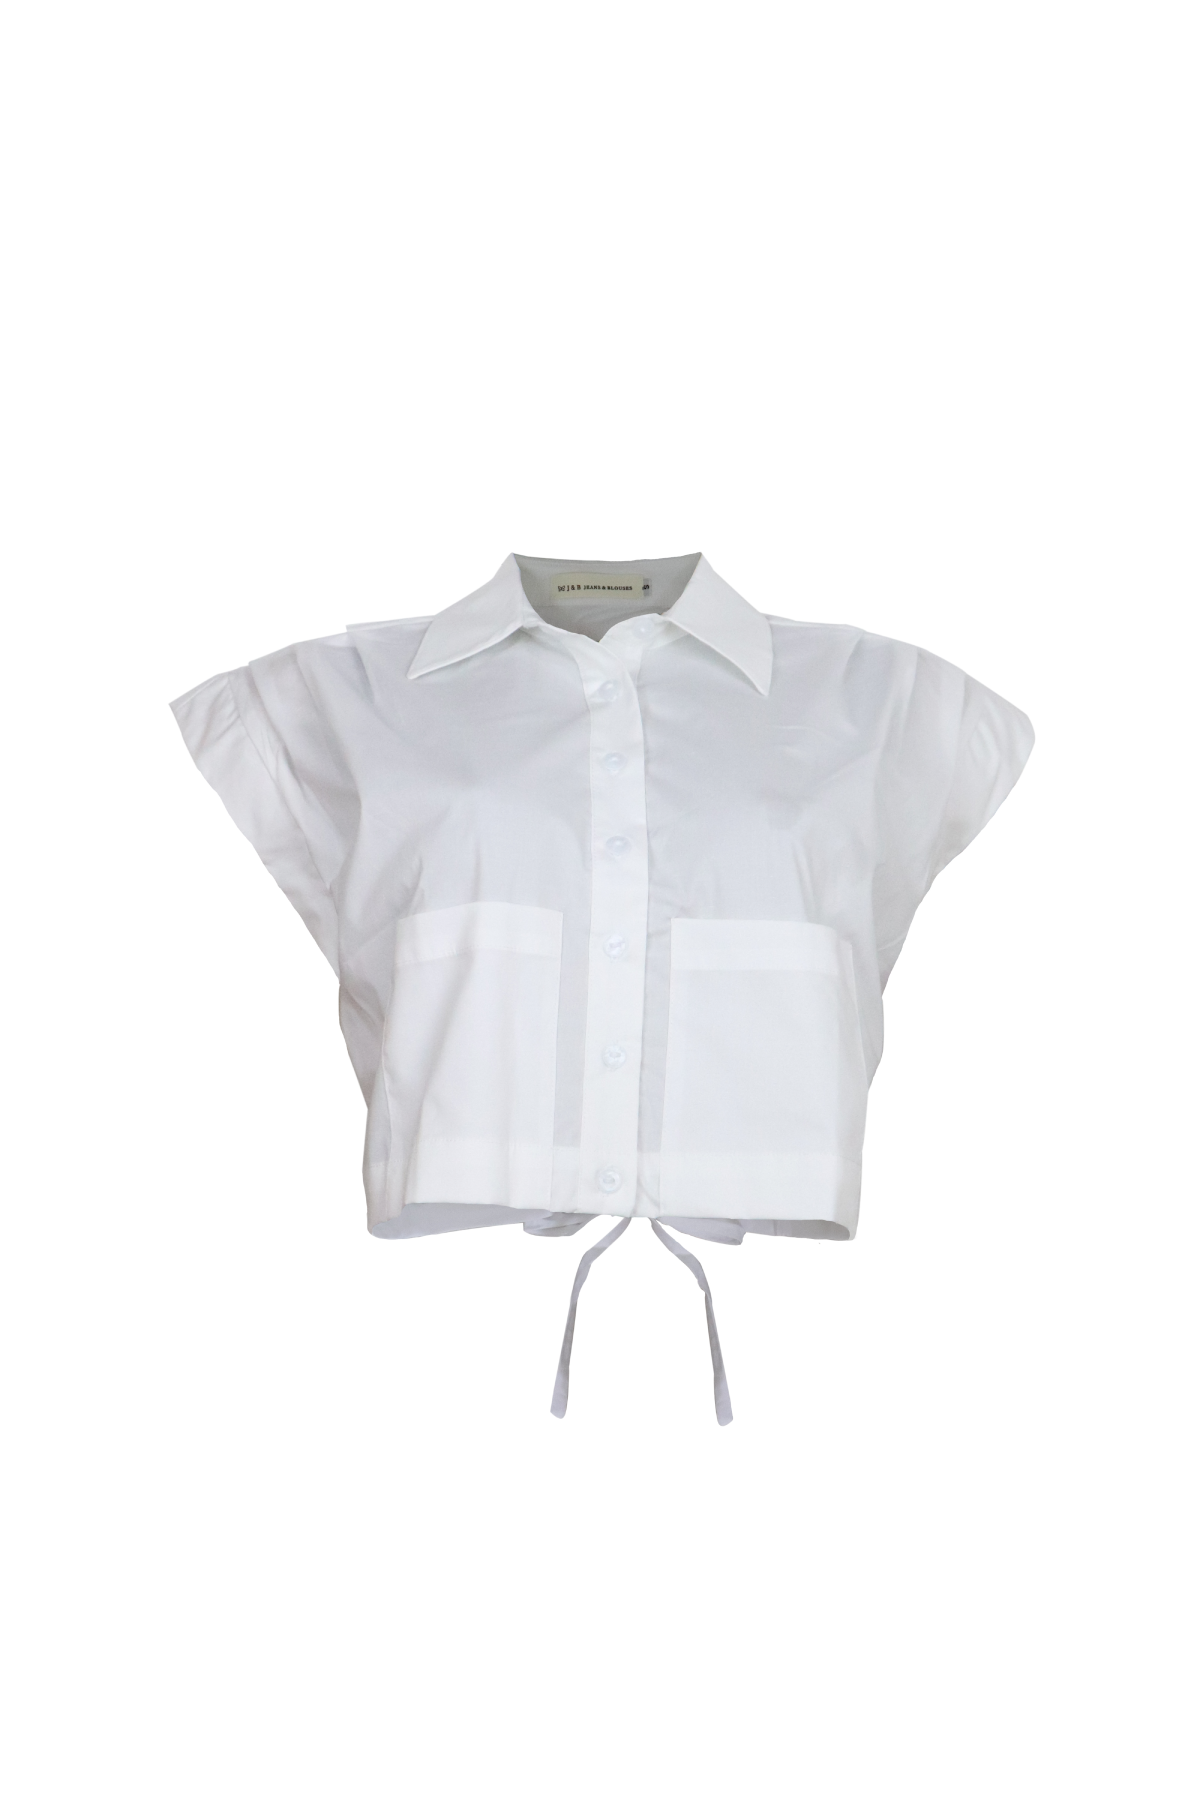 Camisa blanca tipo crop top con mangas cortas.